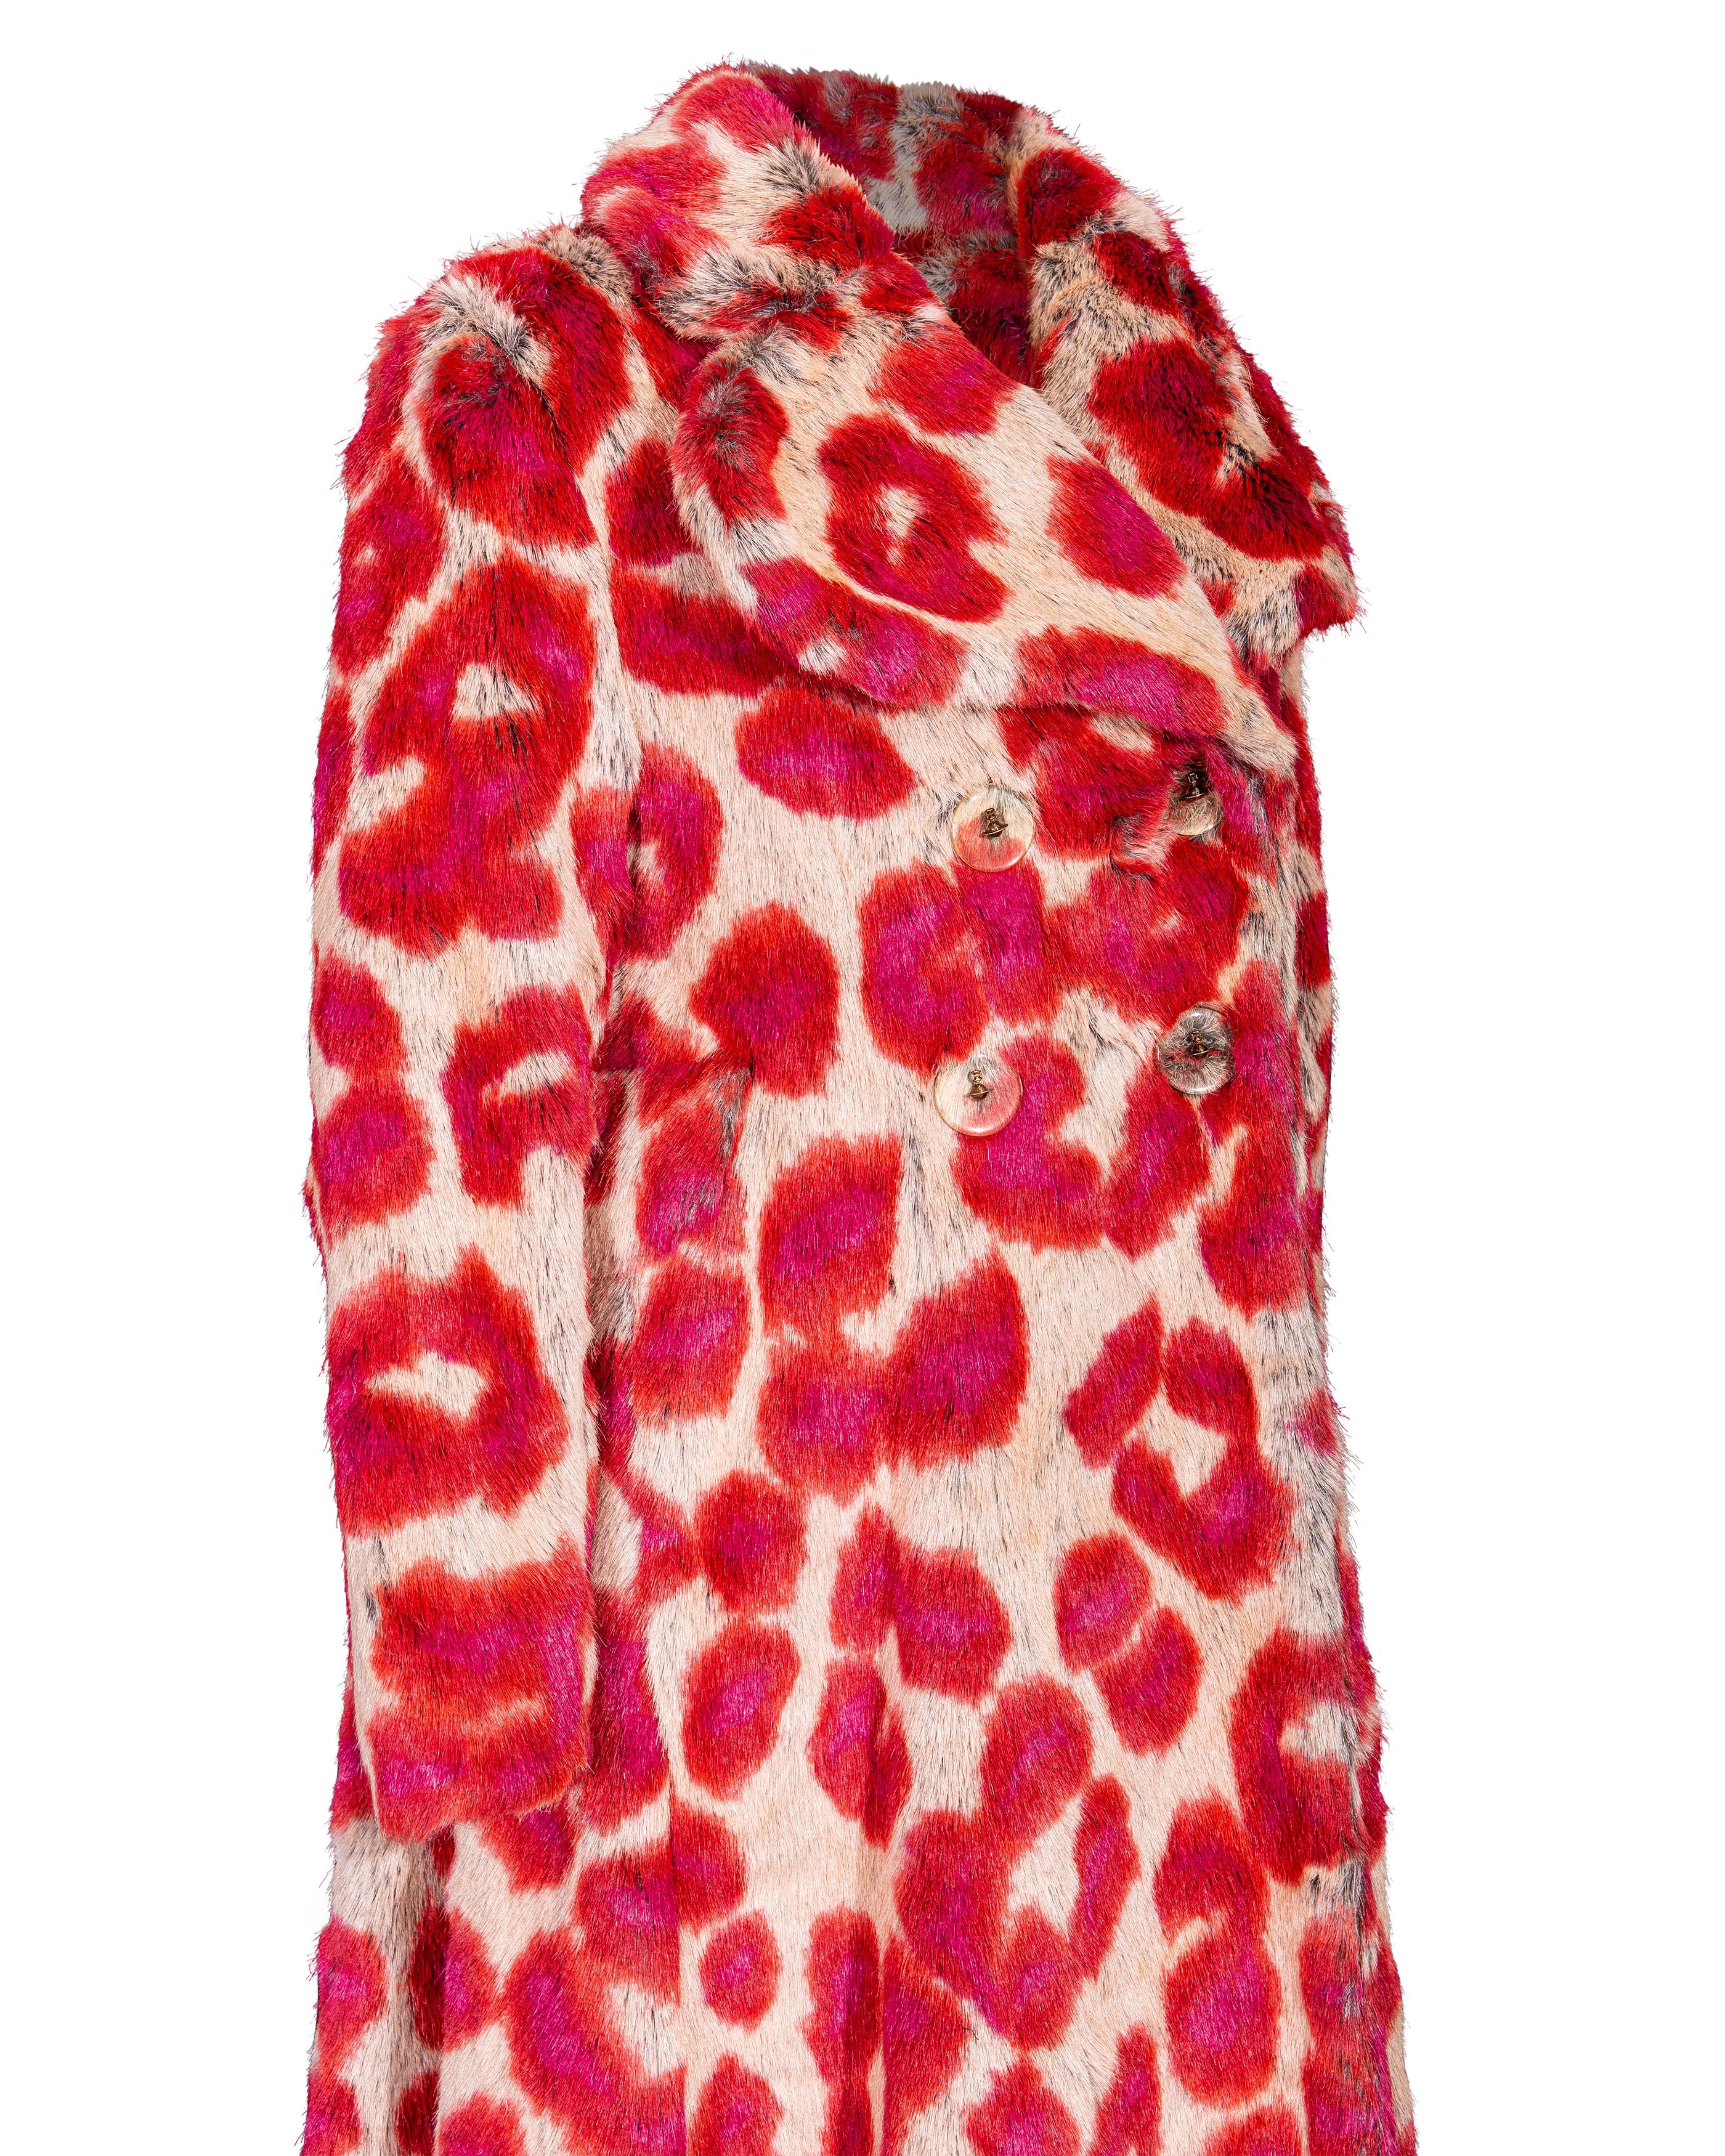 A/W 1992 Vivienne Westwood Faux Fur Leopard Print Coat and Glove Set For Sale 5